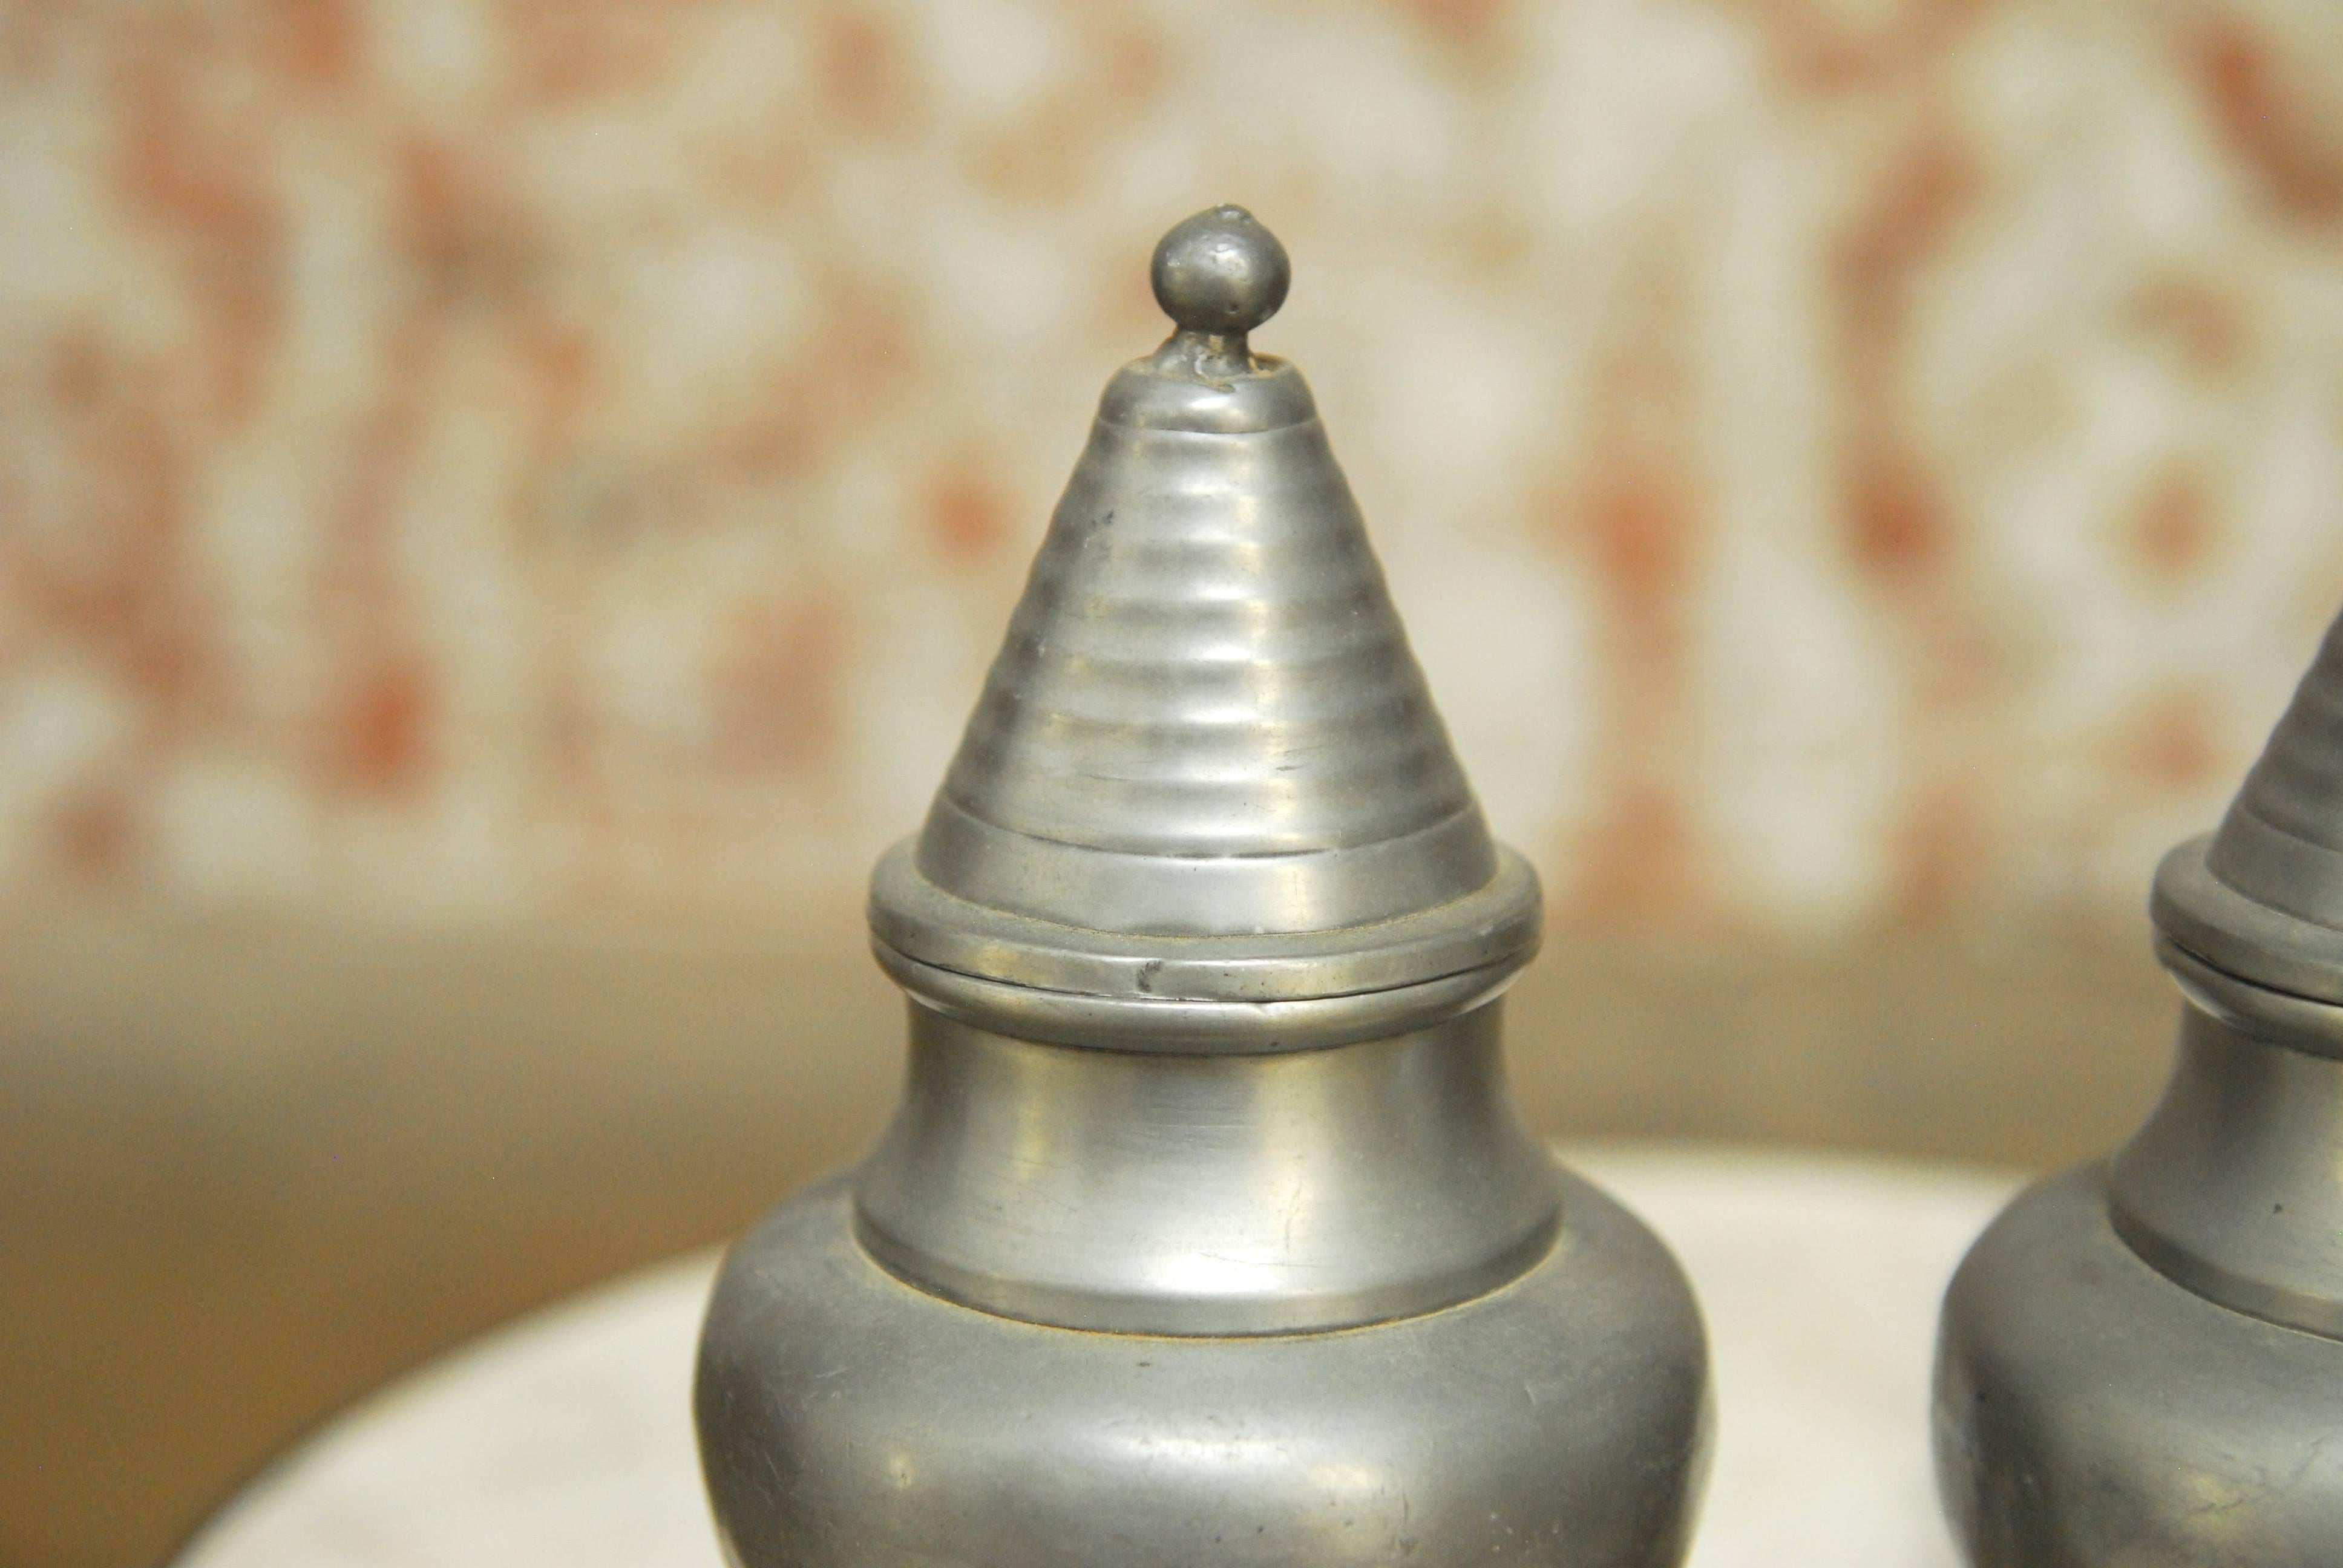 Charmantes Paar kleiner chinesischer Urnen oder Vasen mit Deckel aus Zinn mit gedrehter Oberfläche und Glockensteinen. Ideal zur Dekoration, zur Aufbewahrung oder für beides. Kleine Dellen, die dem Alter und dem Gebrauch entsprechen.
 